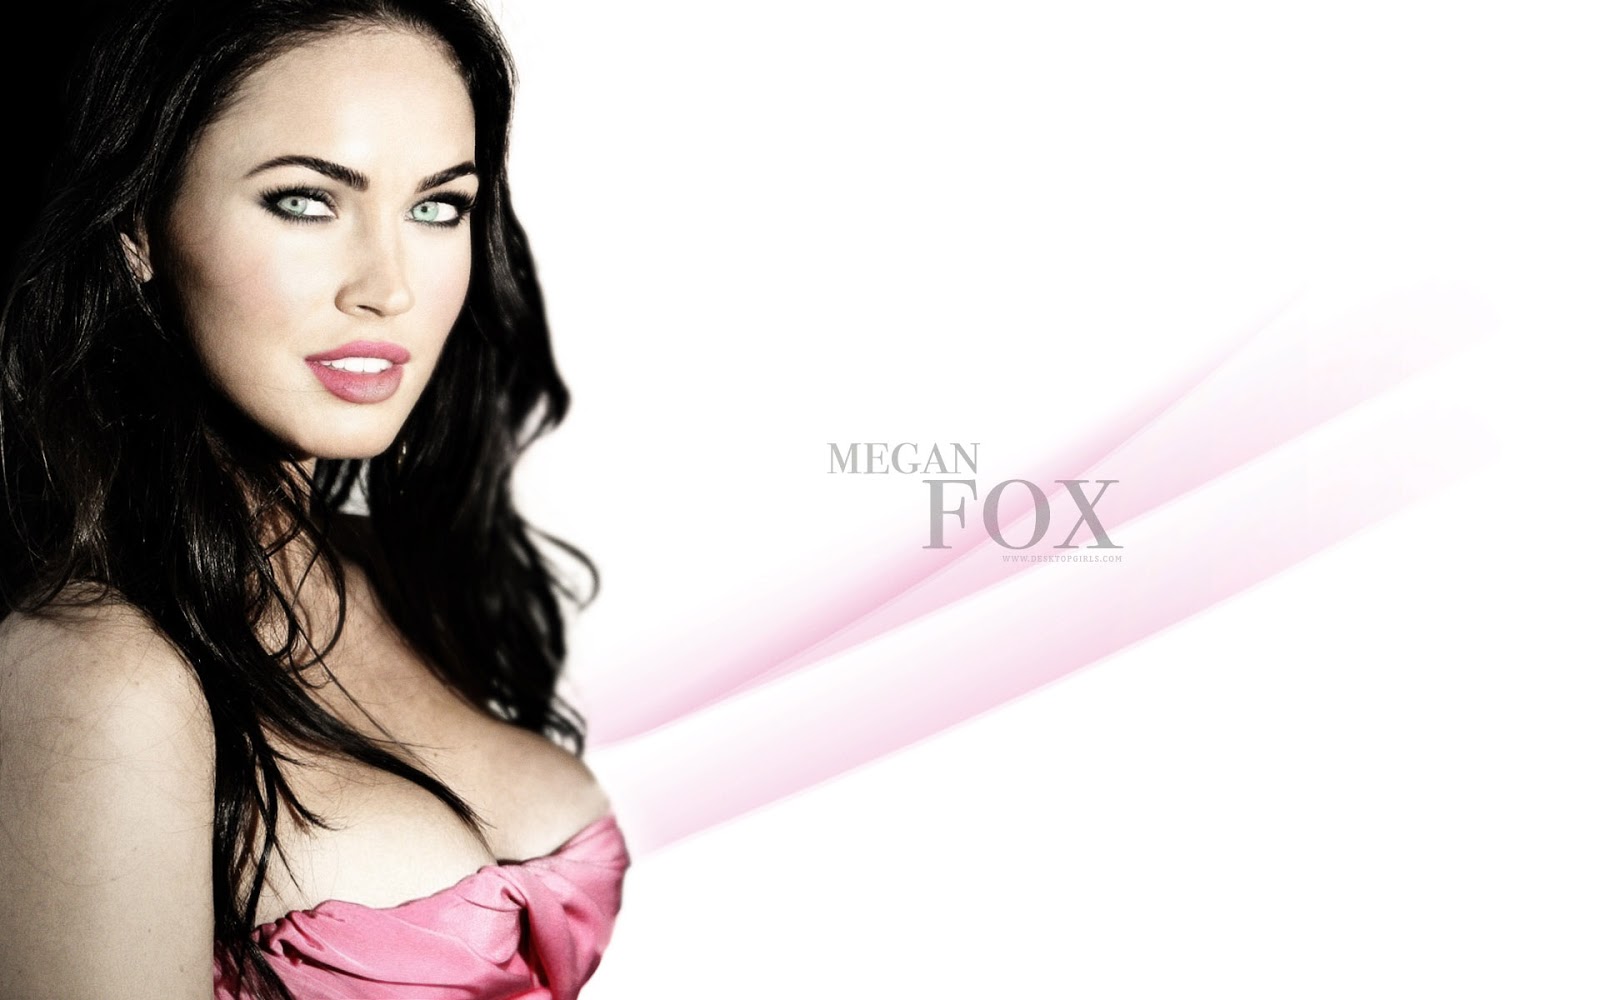  hot Megan Fox Megan Fox with out dress Megan Fox hot wallpapers